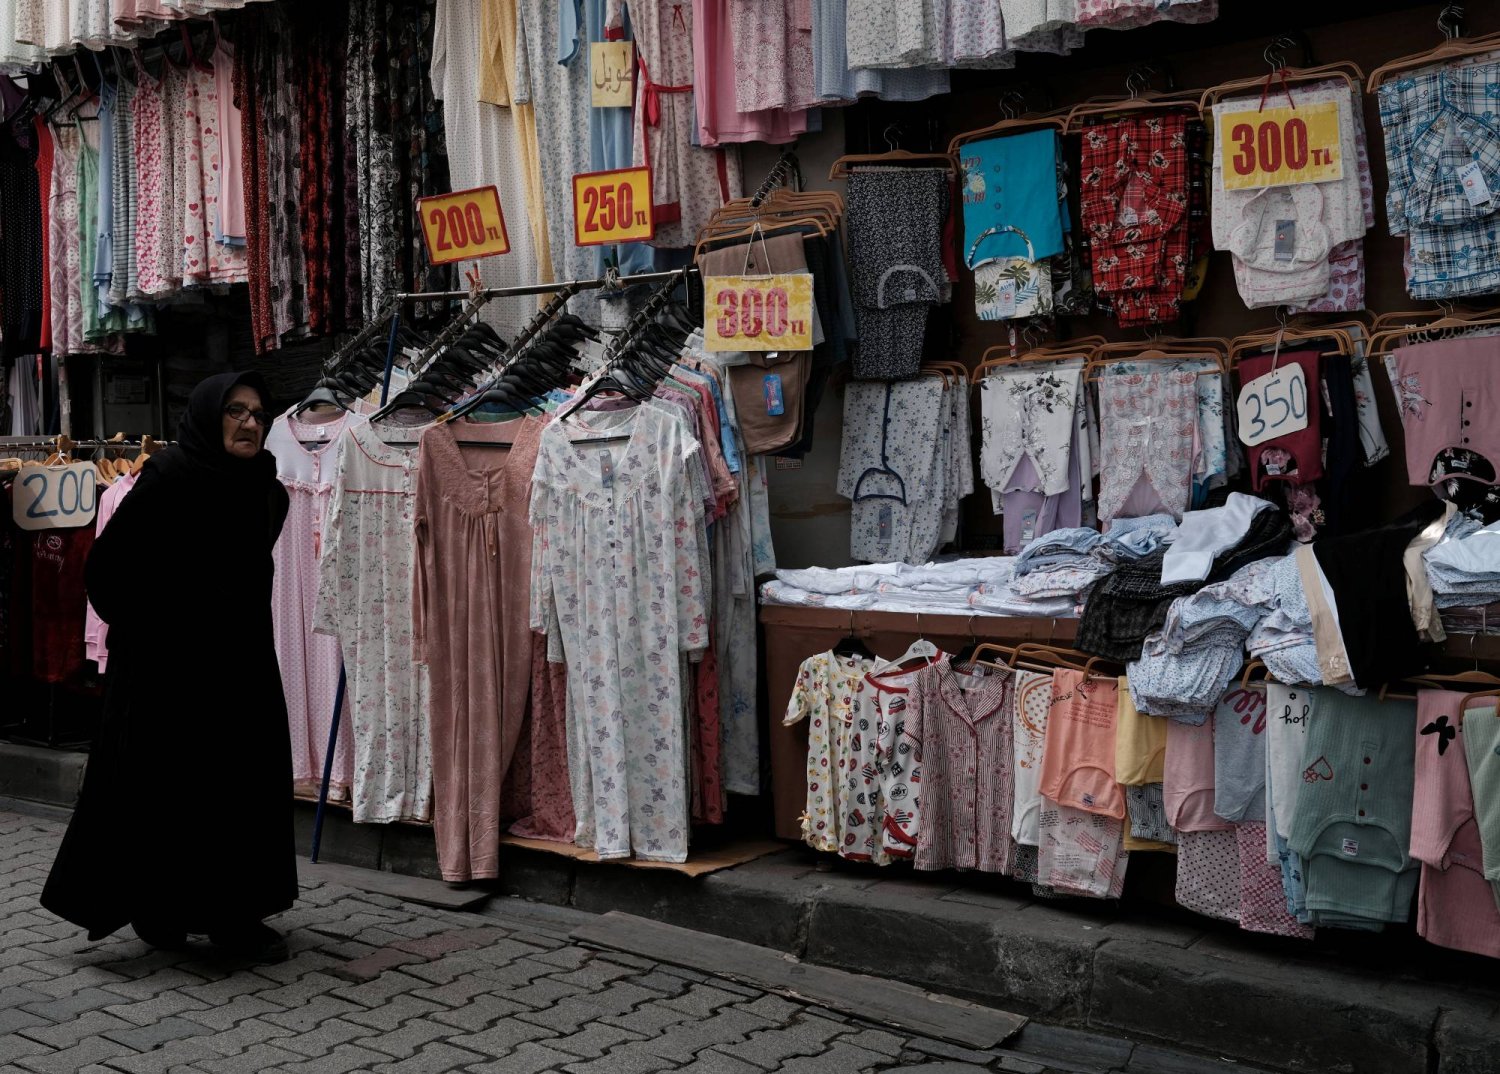 امرأة تمشي أمام متجر لبيع الملابس في منطقة تسوق شهيرة للطبقة المتوسطة بإسطنبول (رويترز)